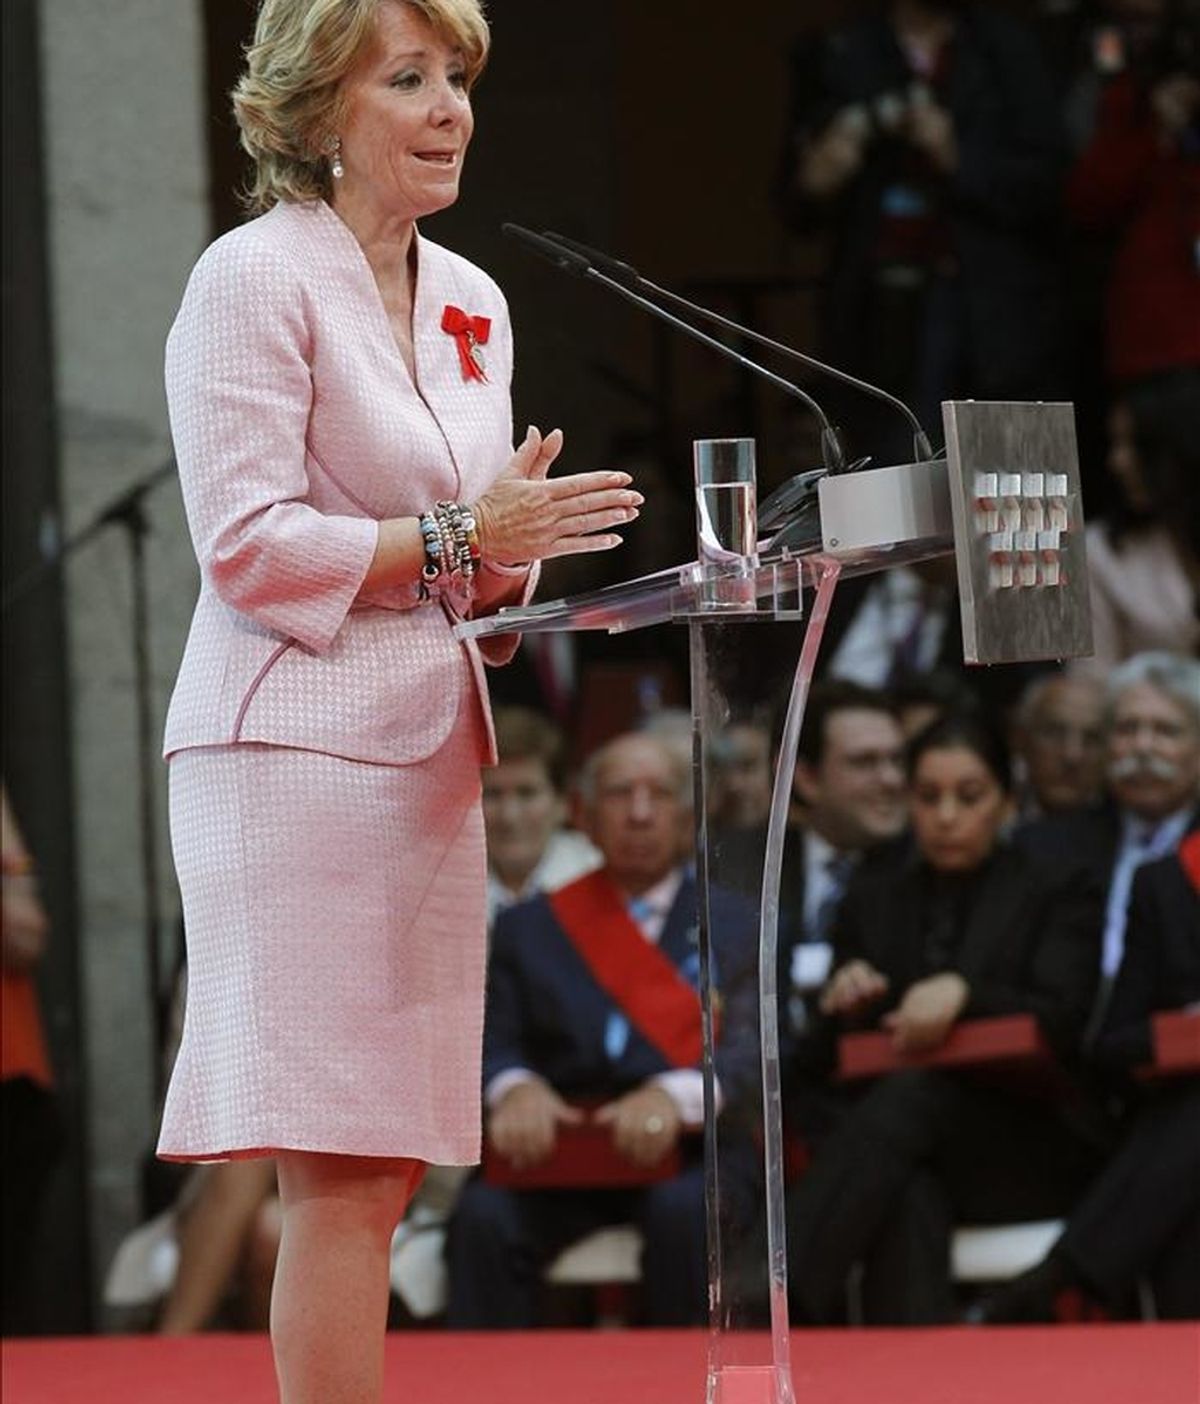 La presidenta de Madrid, Esperanza Aguirre, durante su intervención en los actos oficiales del Día de la Comunidad, en la sede de la Puerta del Sol. EFE